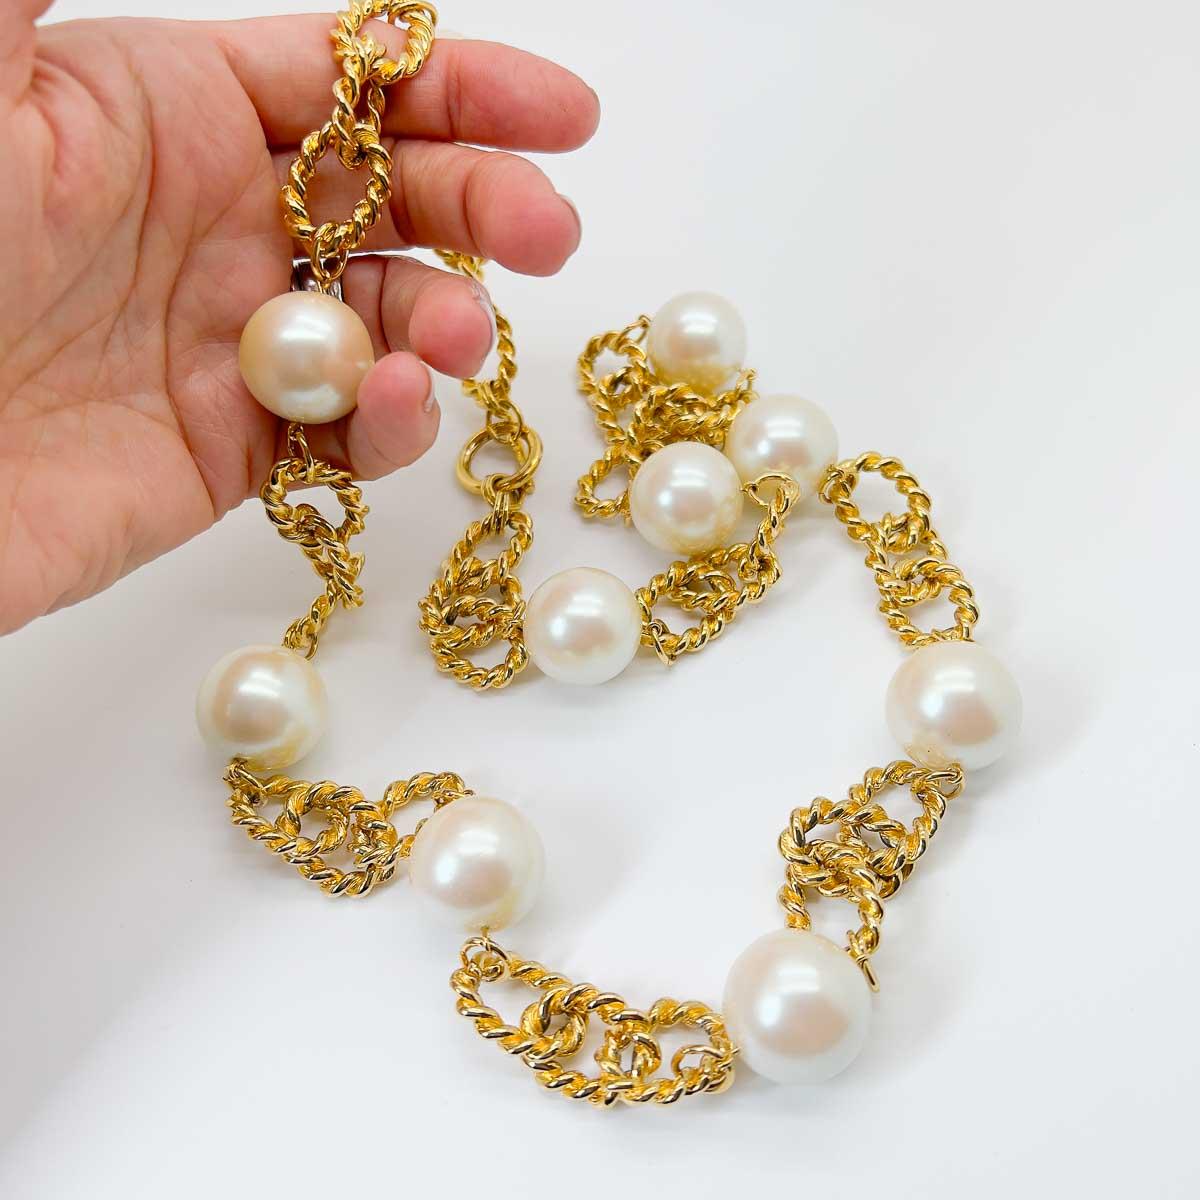 A Vintage Oversize Perlenkette Halskette. Gigantische Perlen zieren eine Kette aus offenen Gliedern, die mit einem Knebelverschluss versehen ist. Das perfekte zeitlose Stück, das sowohl schick als auch ausgefallen ist.

Eine unsignierte Schönheit.